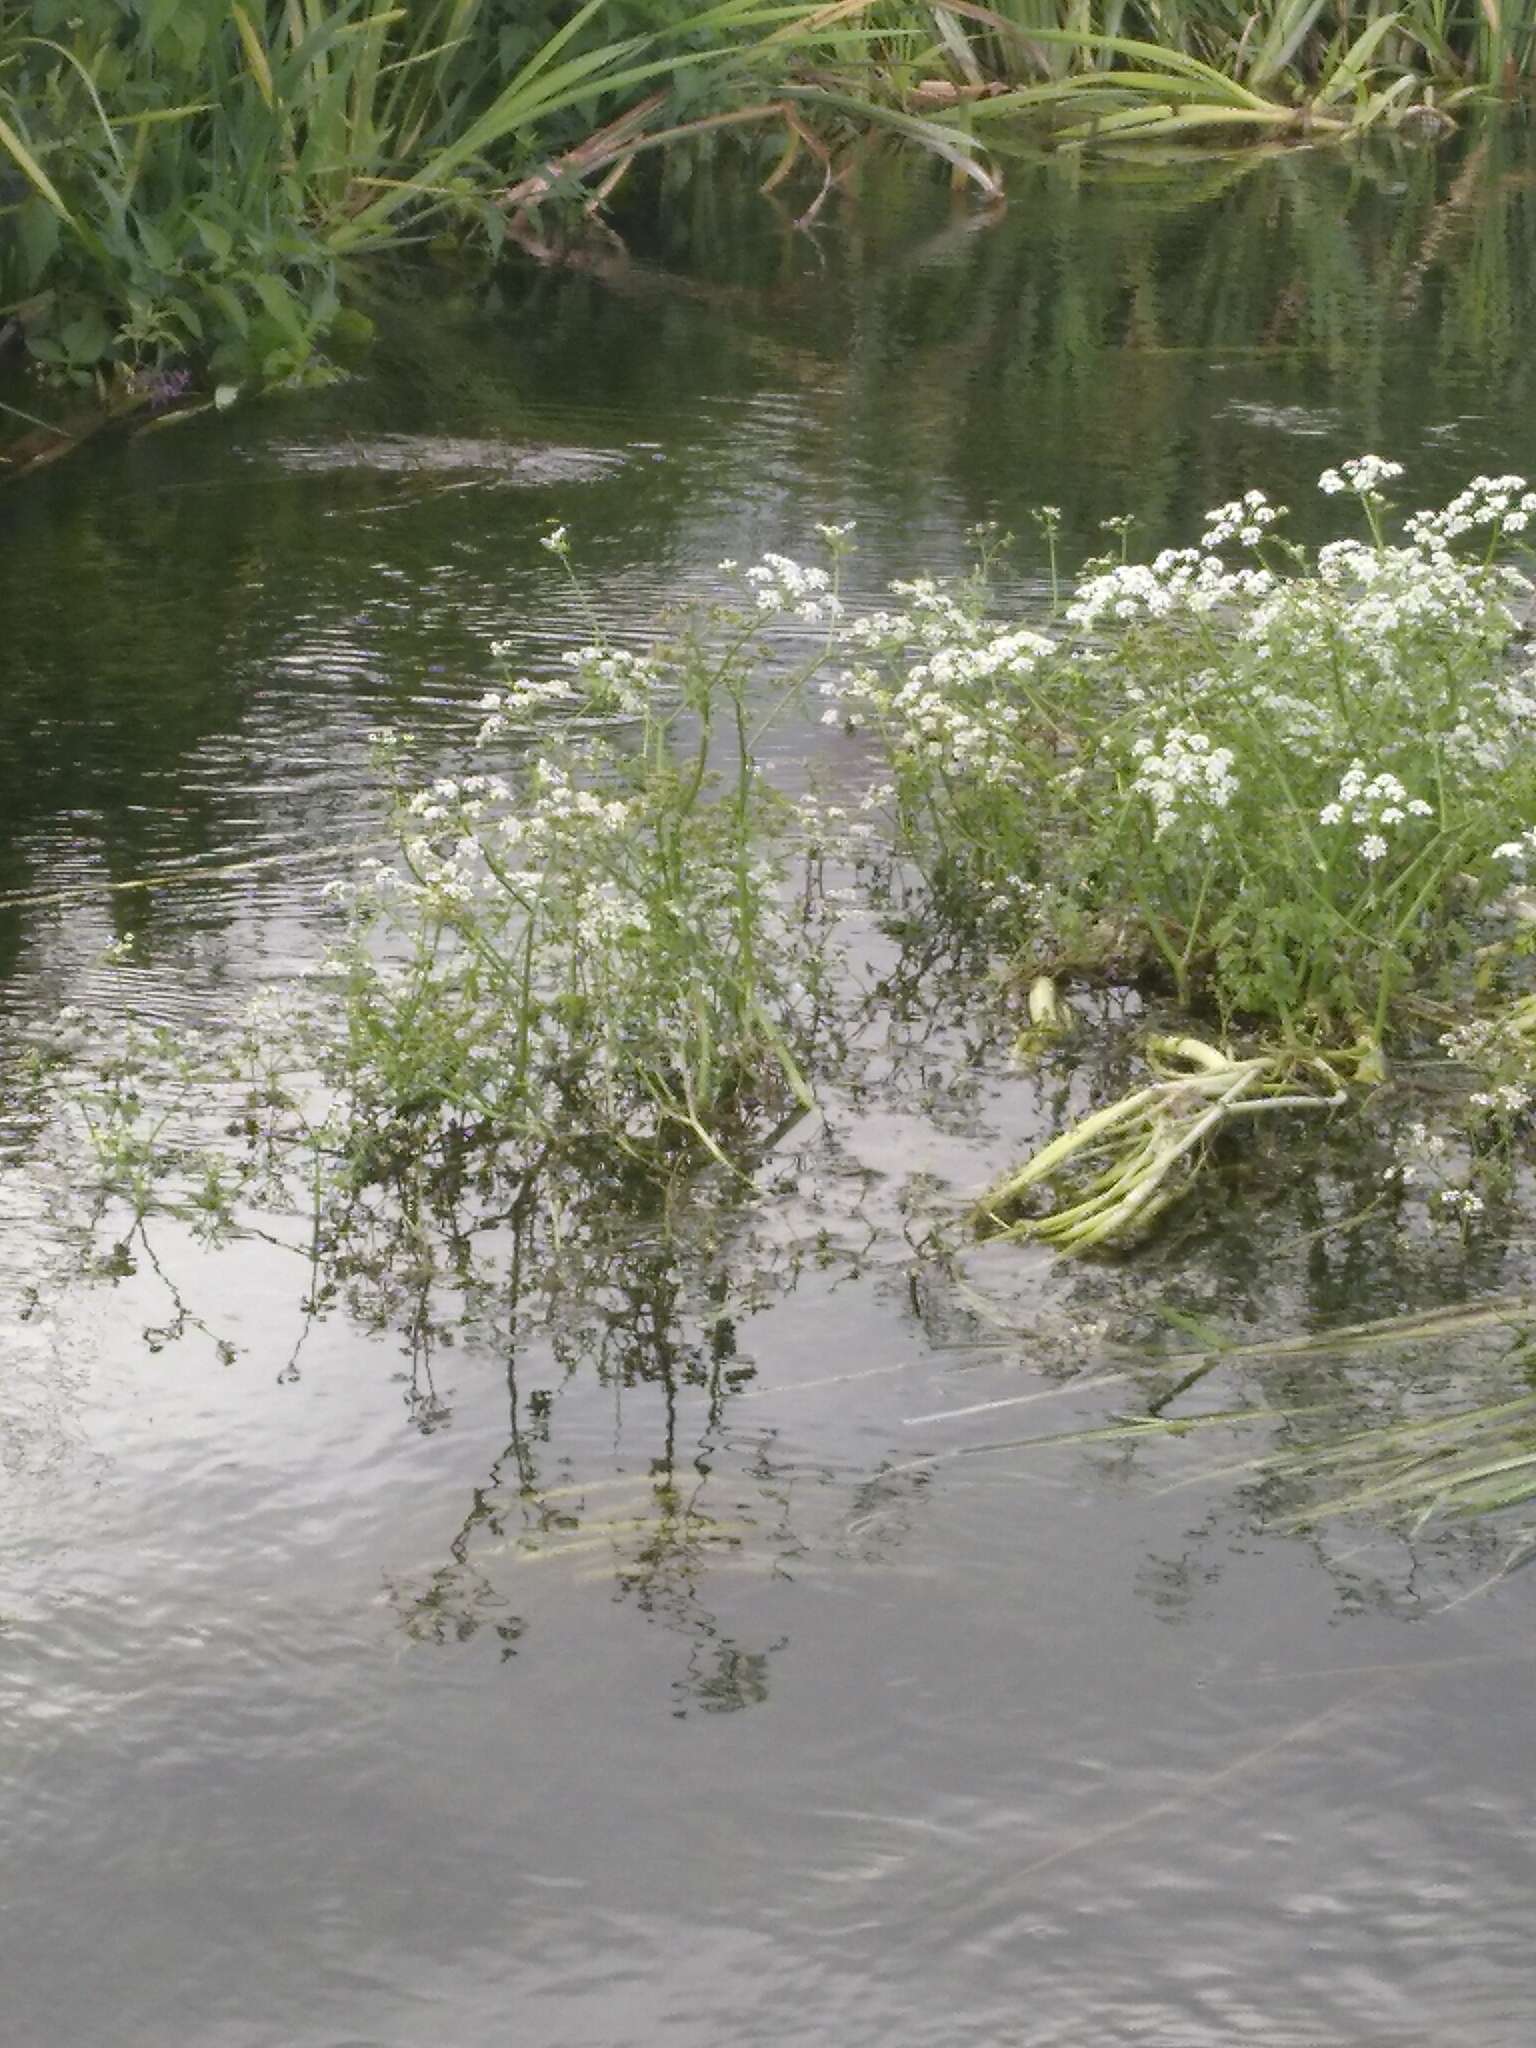 Image of River Water-dropwort